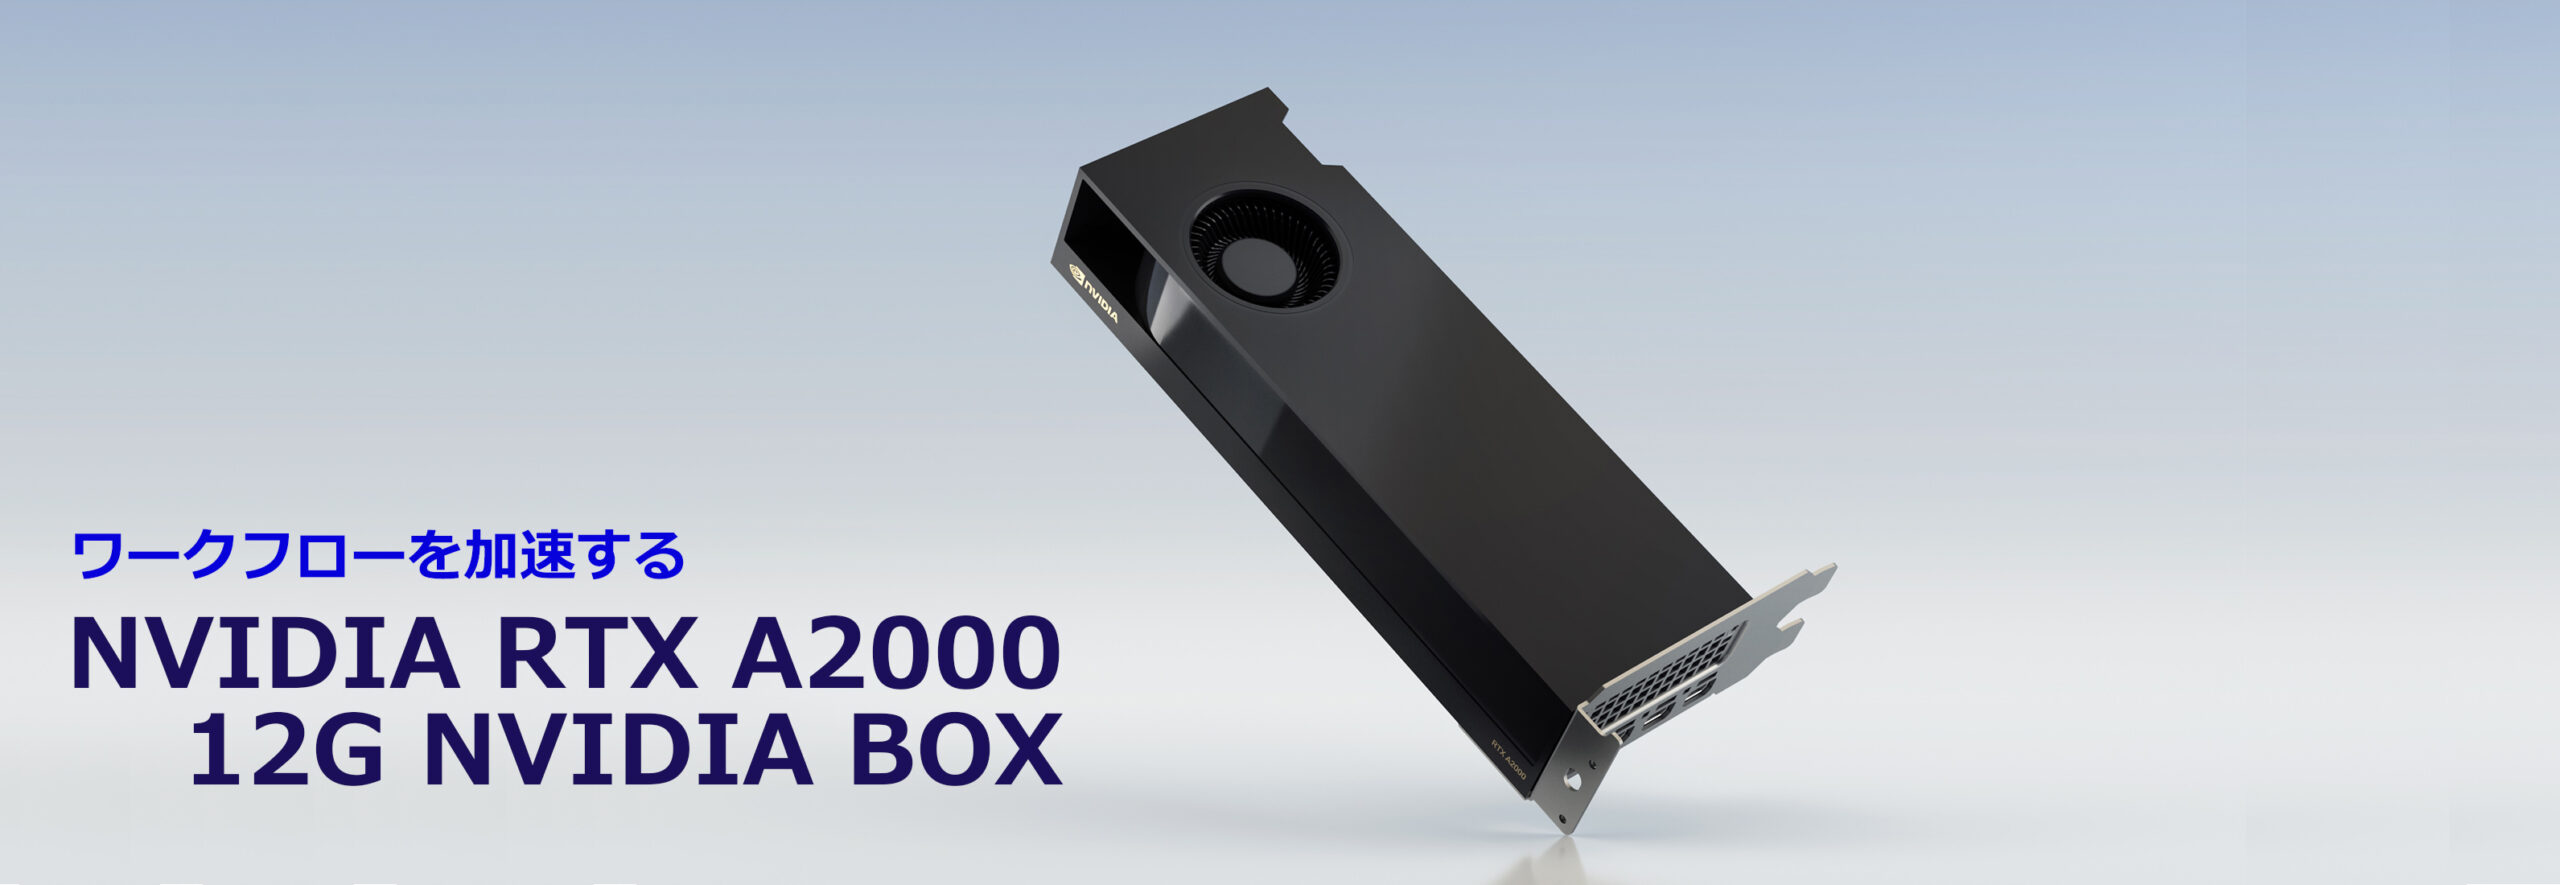 NVIDIA RTX A2000 NVIDIA BOX 2点